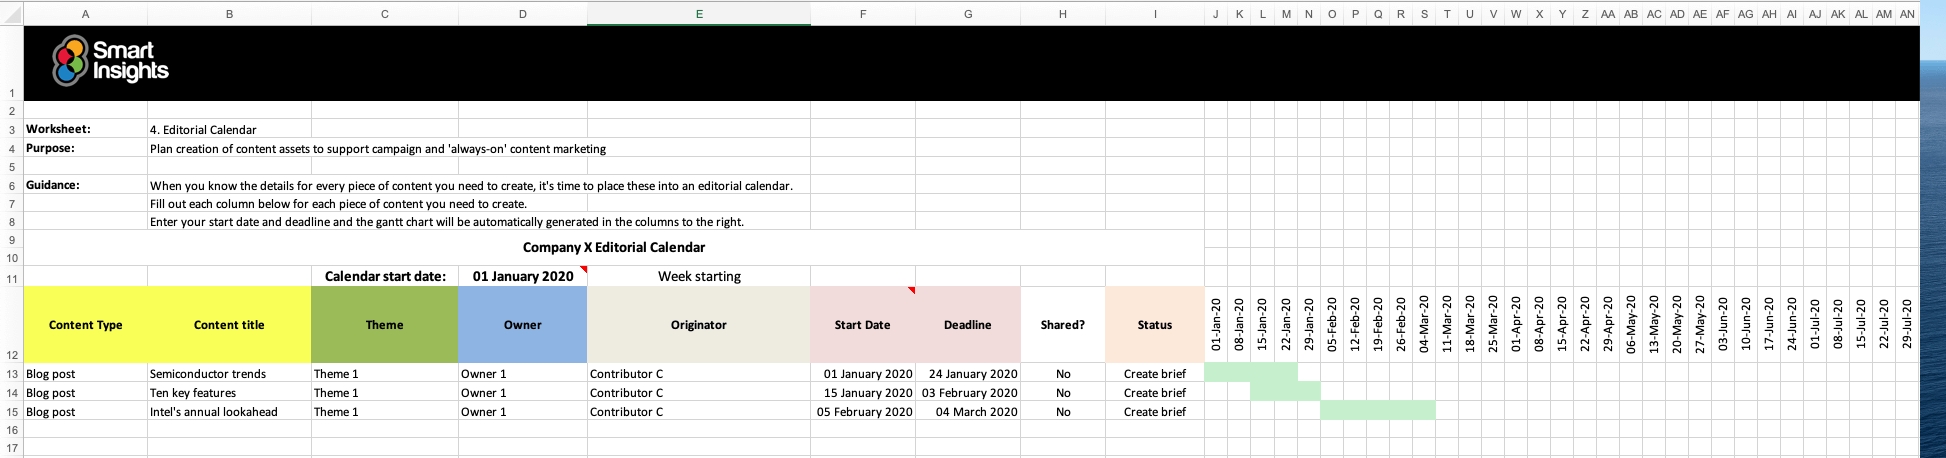 Editorial Calendar Spreadsheet | Smart Insights Content Calendar Template Xls